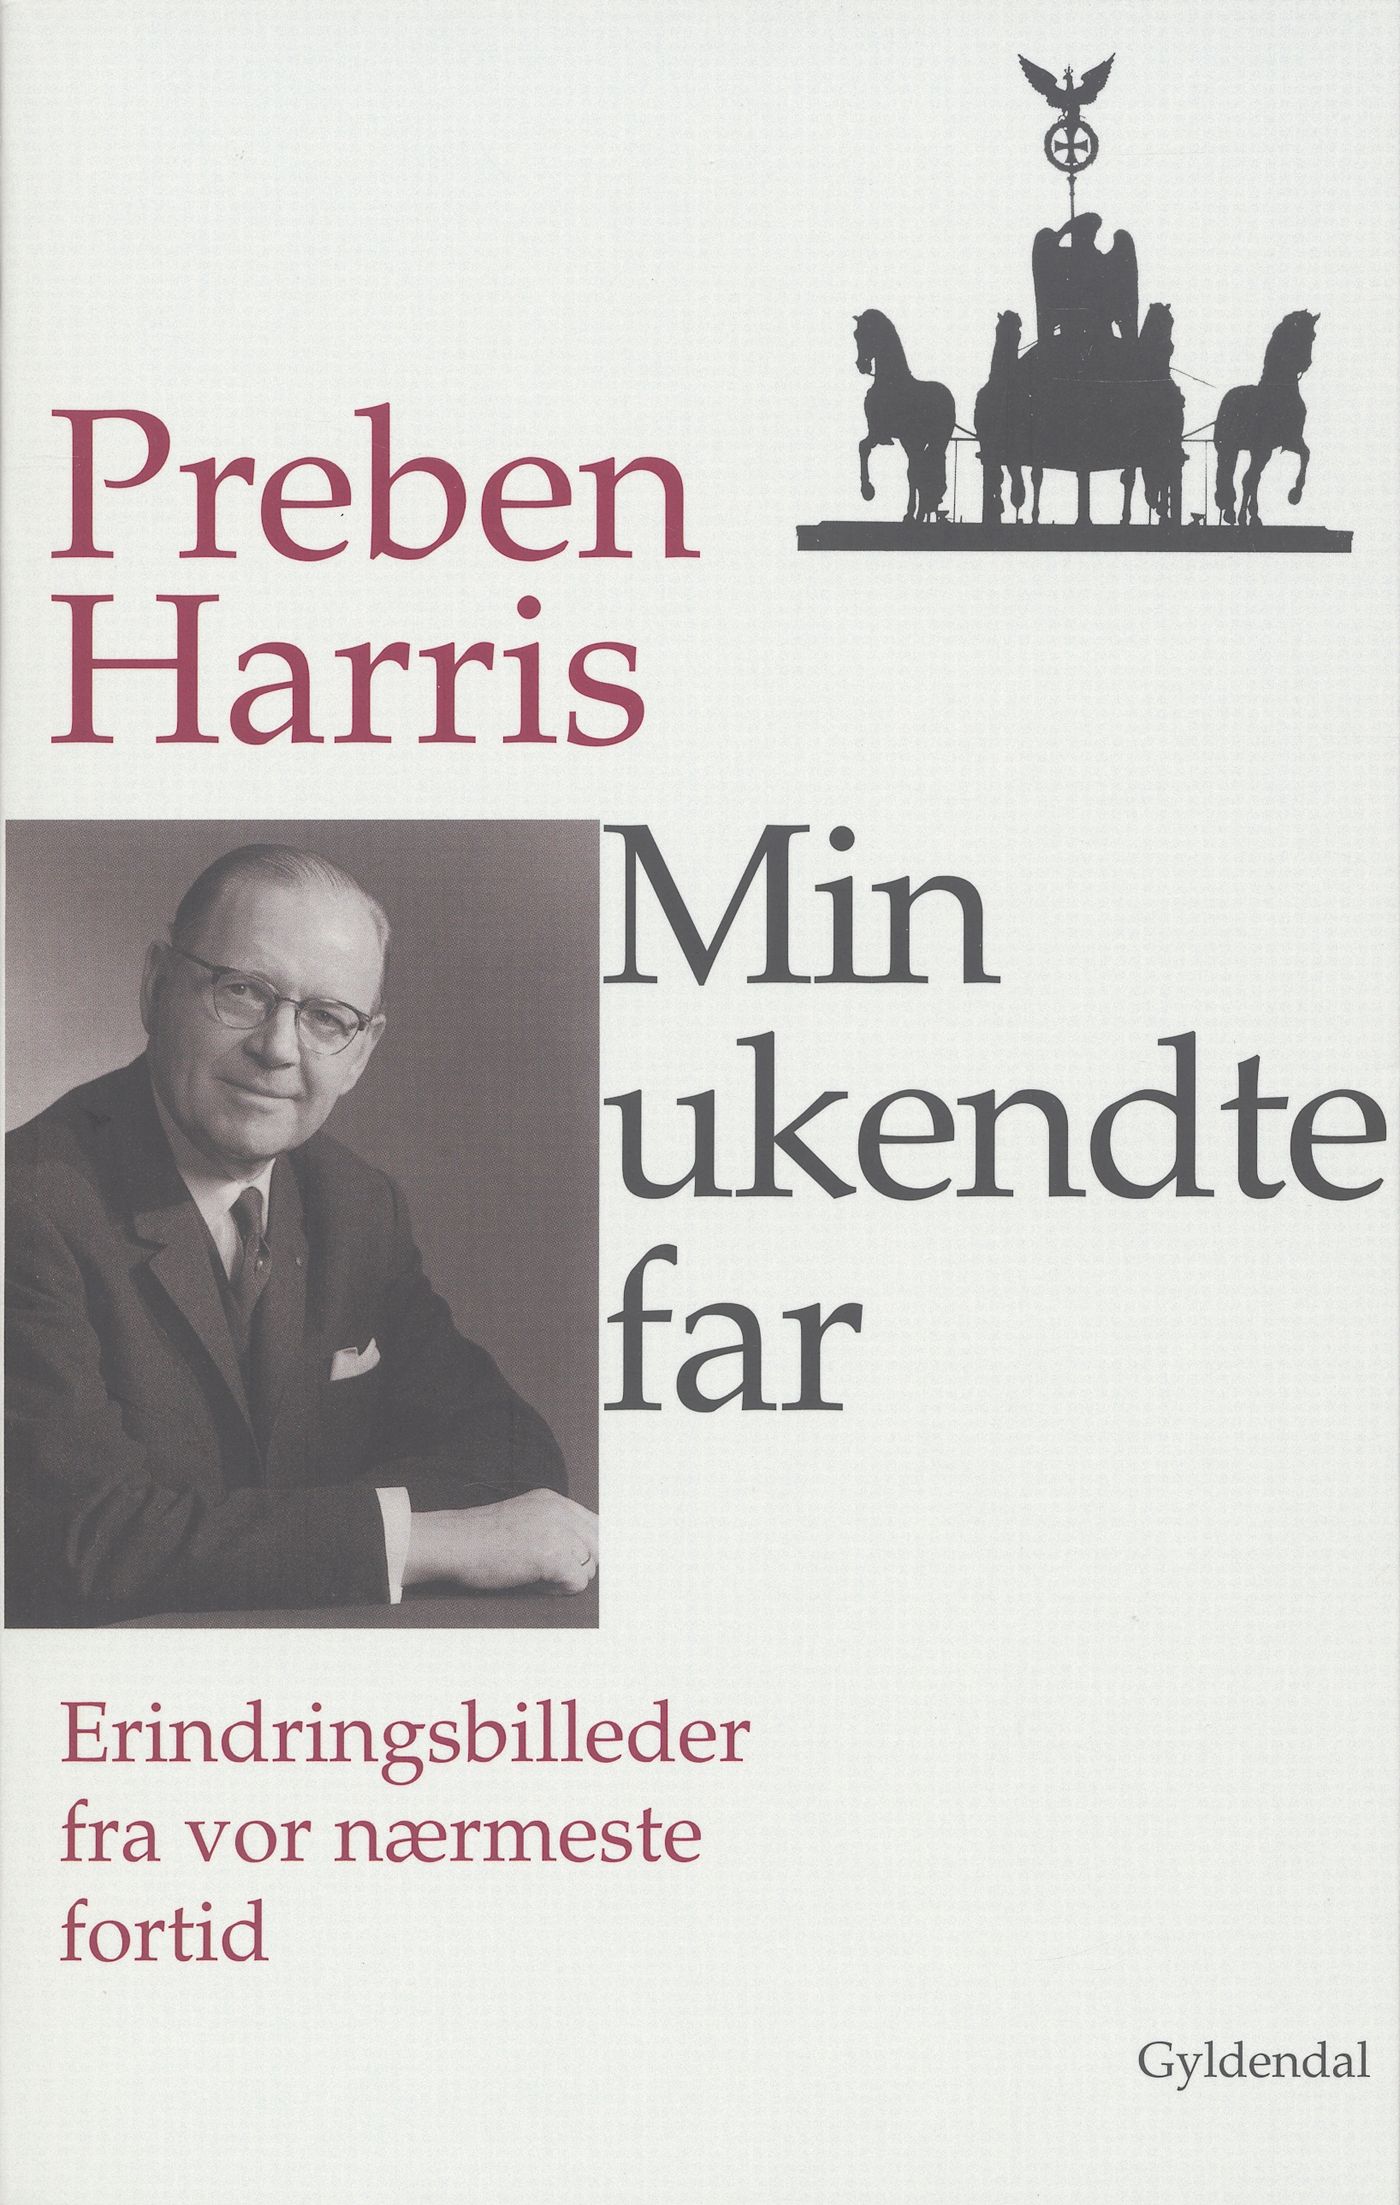 Min ukendte far, e-bok av Preben Harris